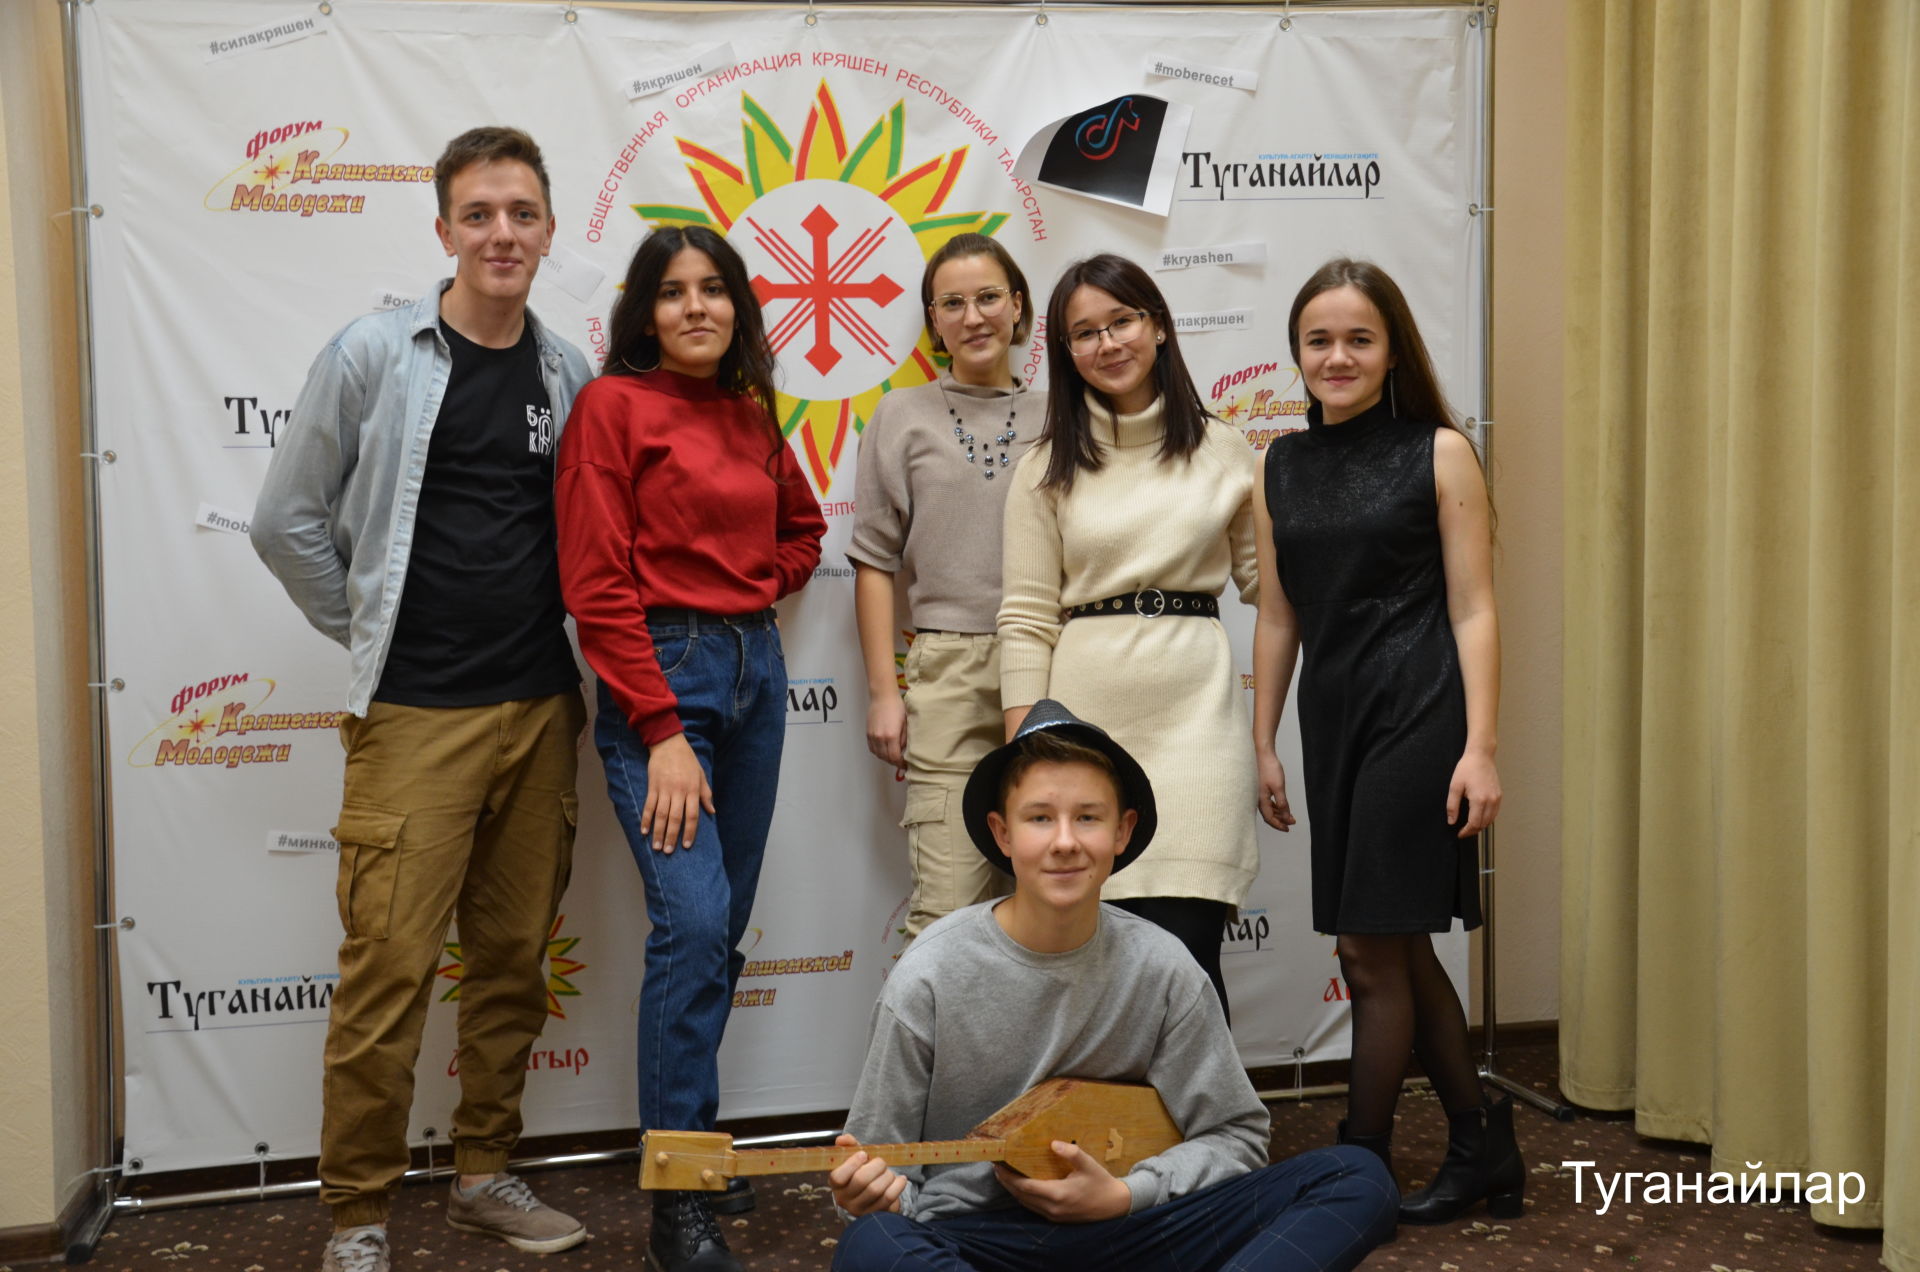 Яков Емельянов исемендәге үзәктә керәшен студентлары очрашуы булды - фото